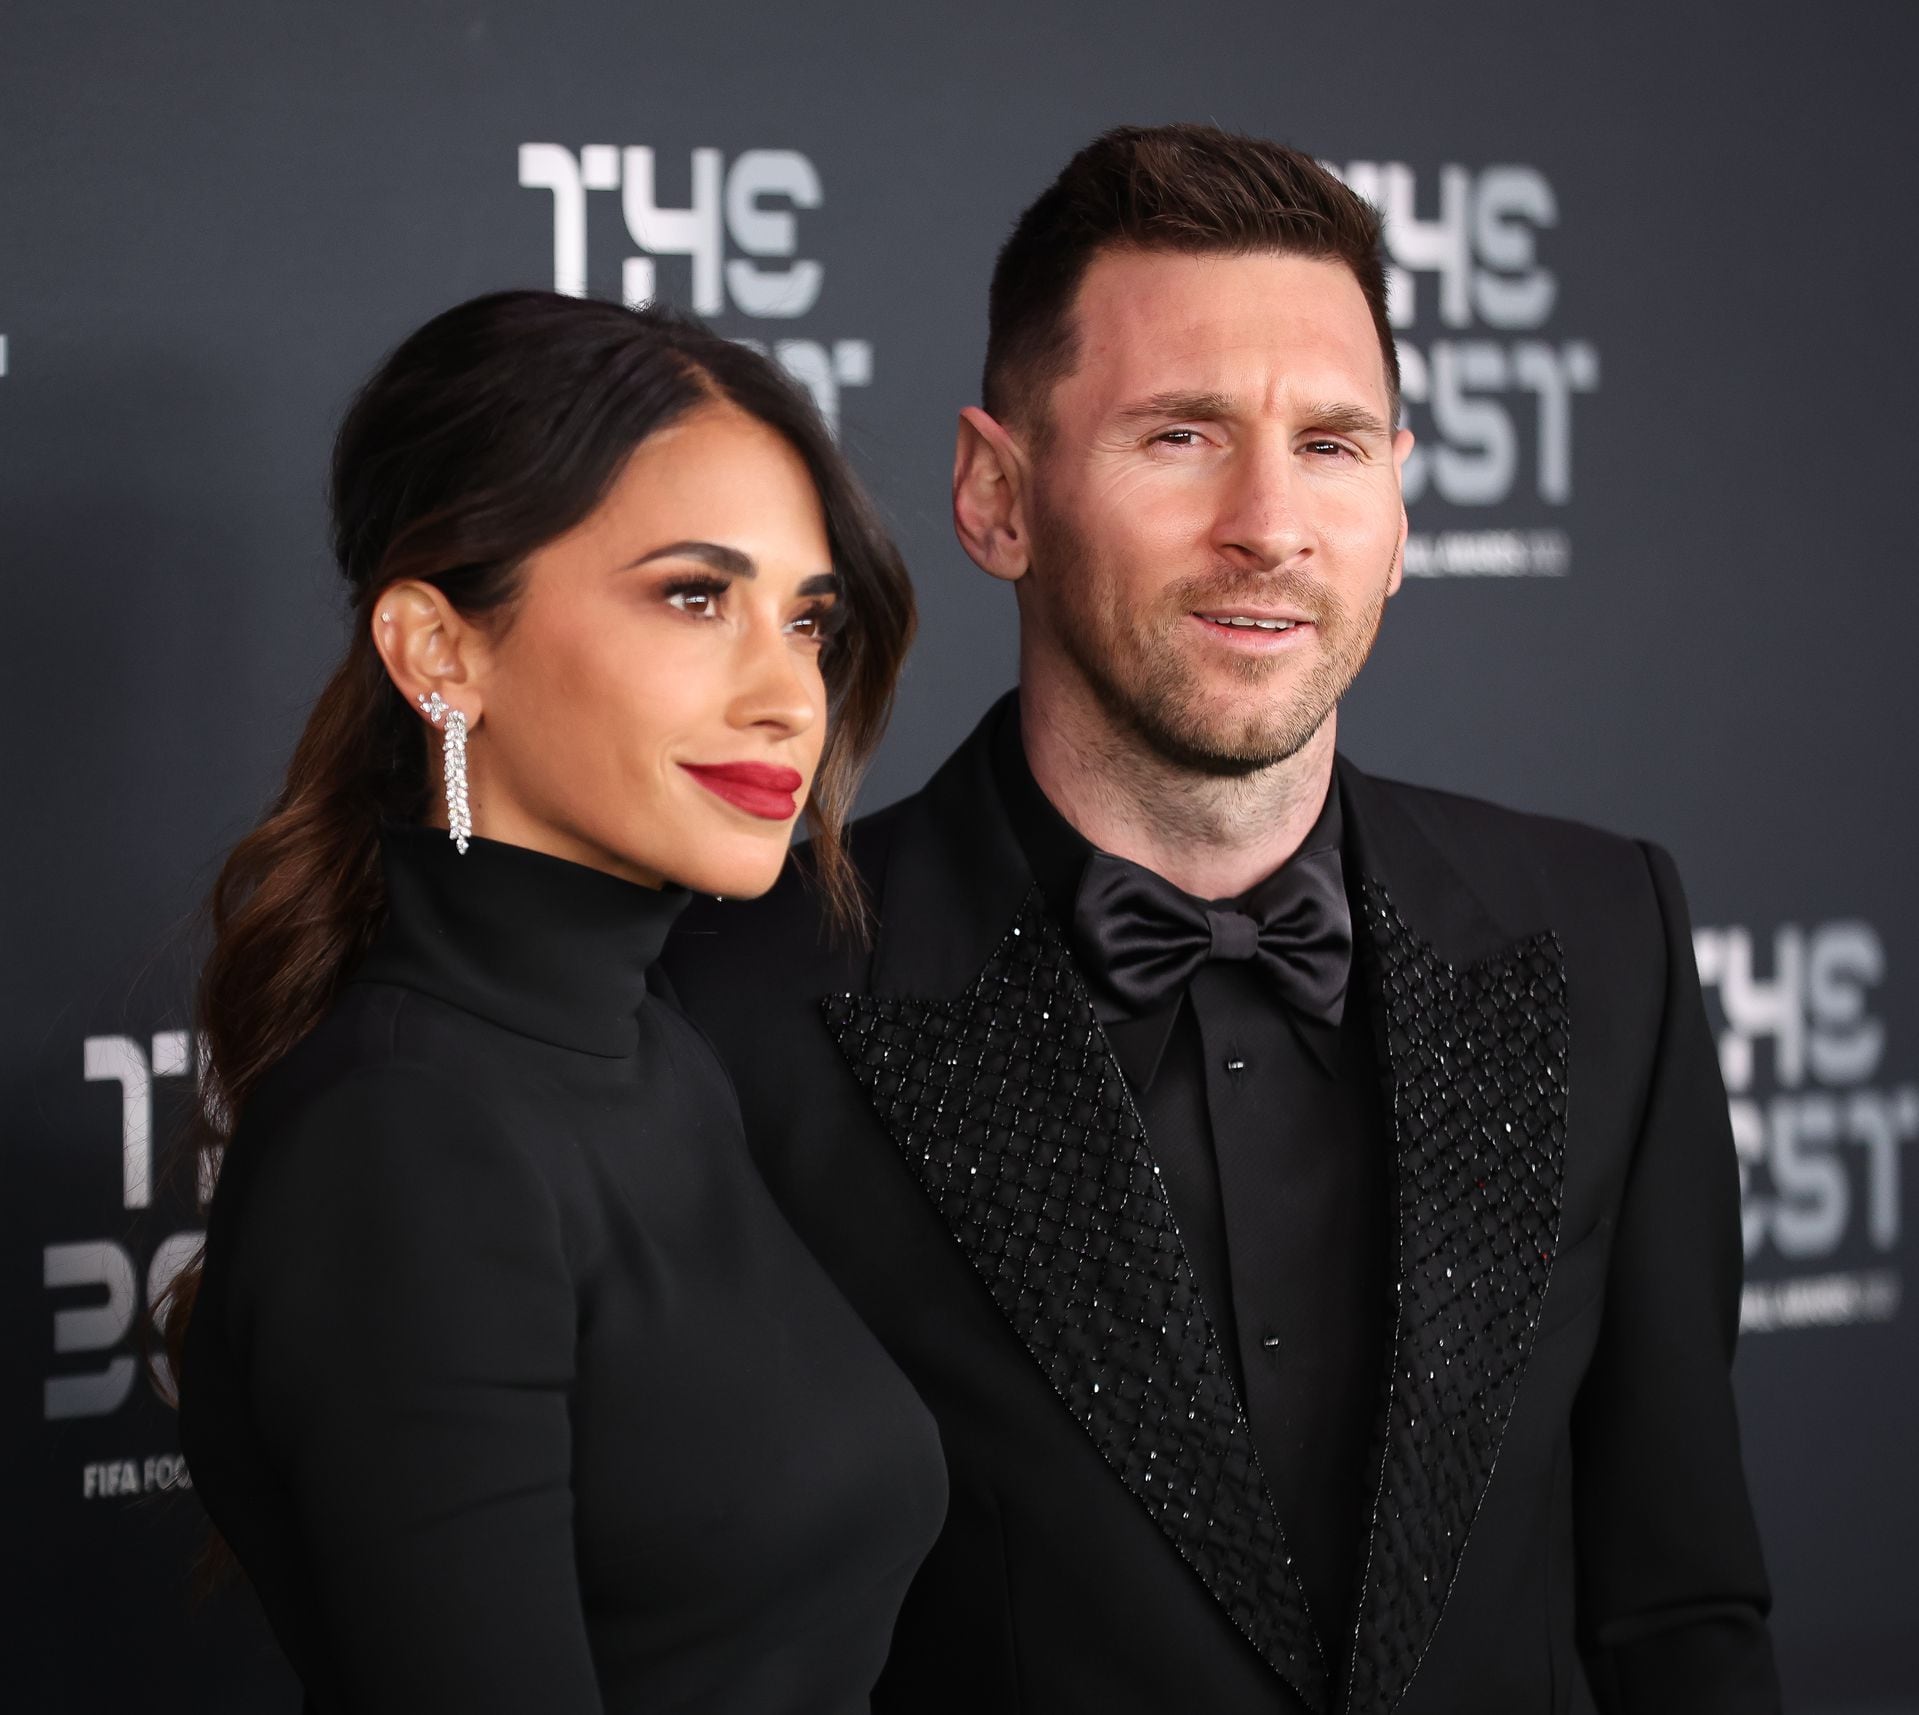 Antonela Rocuzzo estuvo junto al astro Lionel Messi en la más reciente gala de los premios The Best.